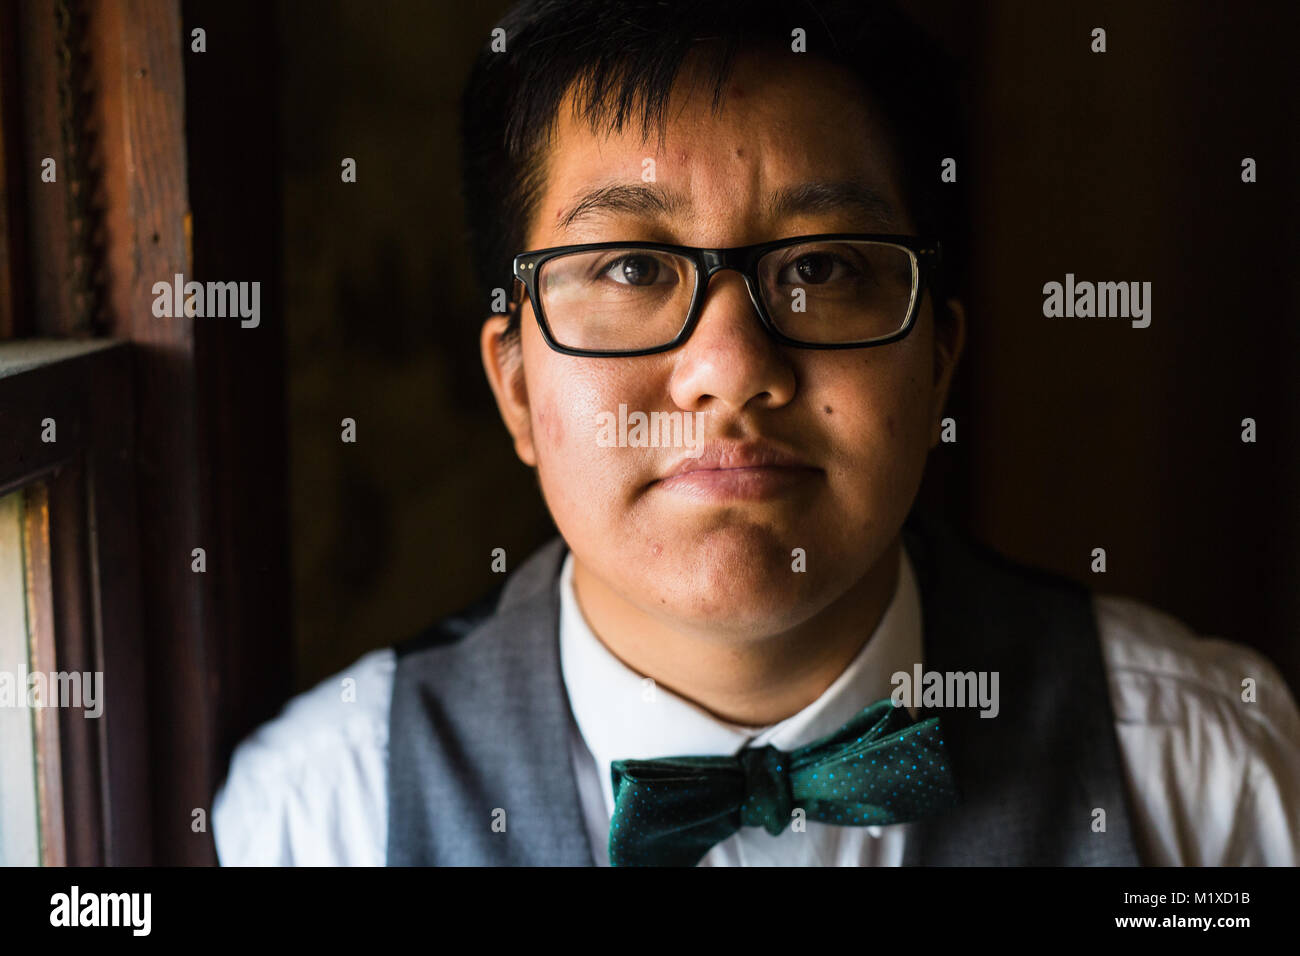 Jeune homme transgenres dans l'Habillement formel pose dans un emplacement grungy urban Banque D'Images